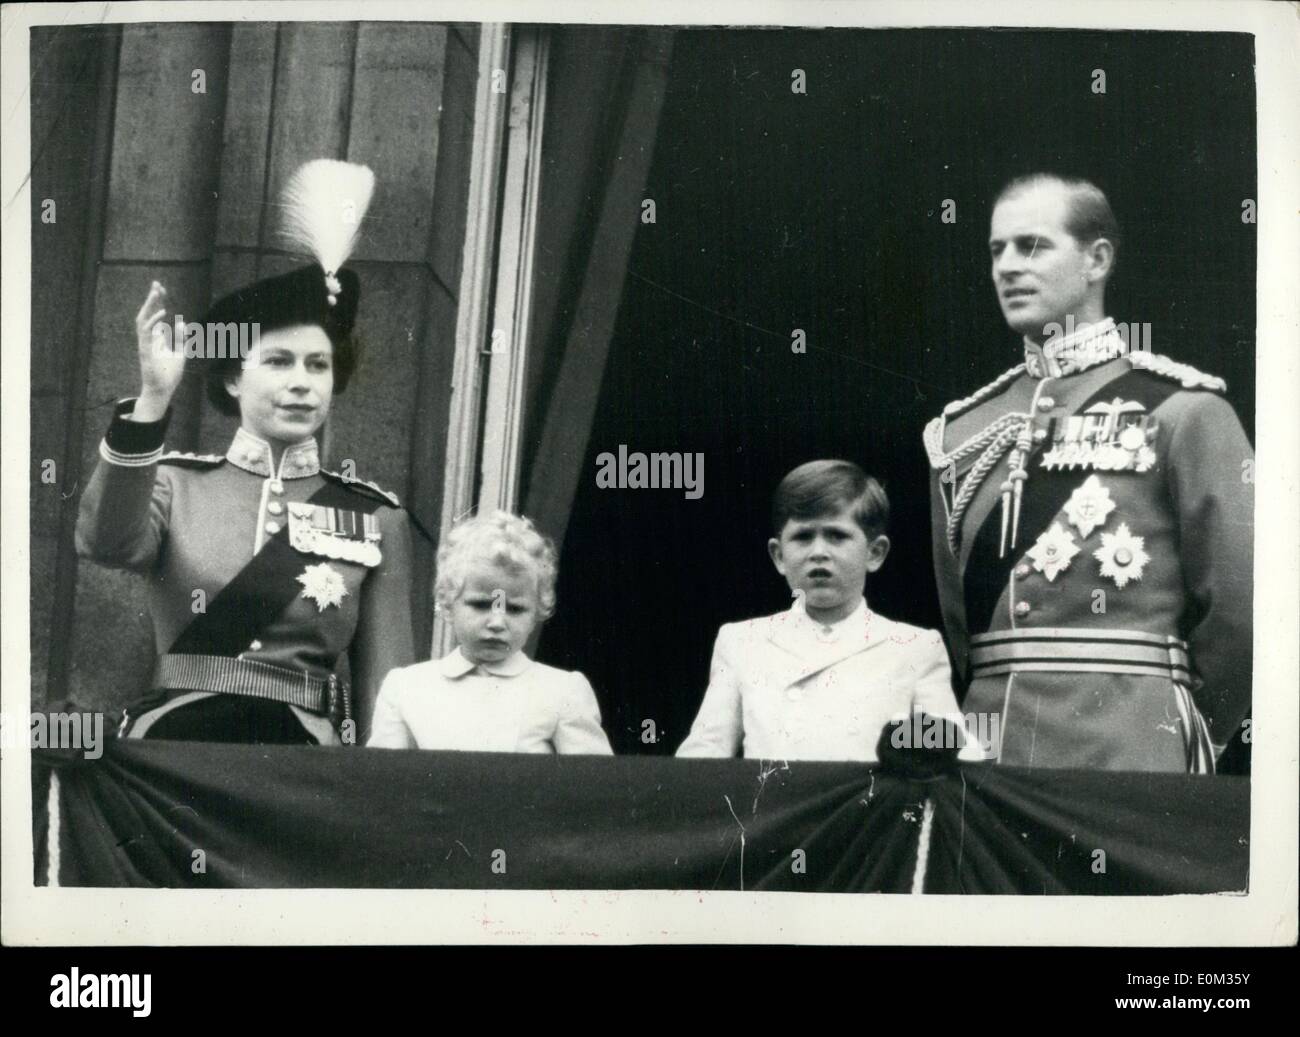 Juin 06, 1953 - LA PARADE LA CÉRÉMONIE DE COULEUR... Un SALUT DU BALCON.. La reine Elizabeth II a pris le salut à la parade du cérémonie Couleur sur Horse Guards Parade aujourd'hui. L'occasion a marqué l'anniversaire officiel de la Reine. La couleur est celle de la dépêche Premier bataillon, les Grenadier Guards. La reine portait l'uniforme de colonel en chef du régiment, une tunique rouge, bleu foncé et une jupe circonscription chapeau tricorne avec le Bold de badge et plumet blanc des Grenadiers. Banque D'Images